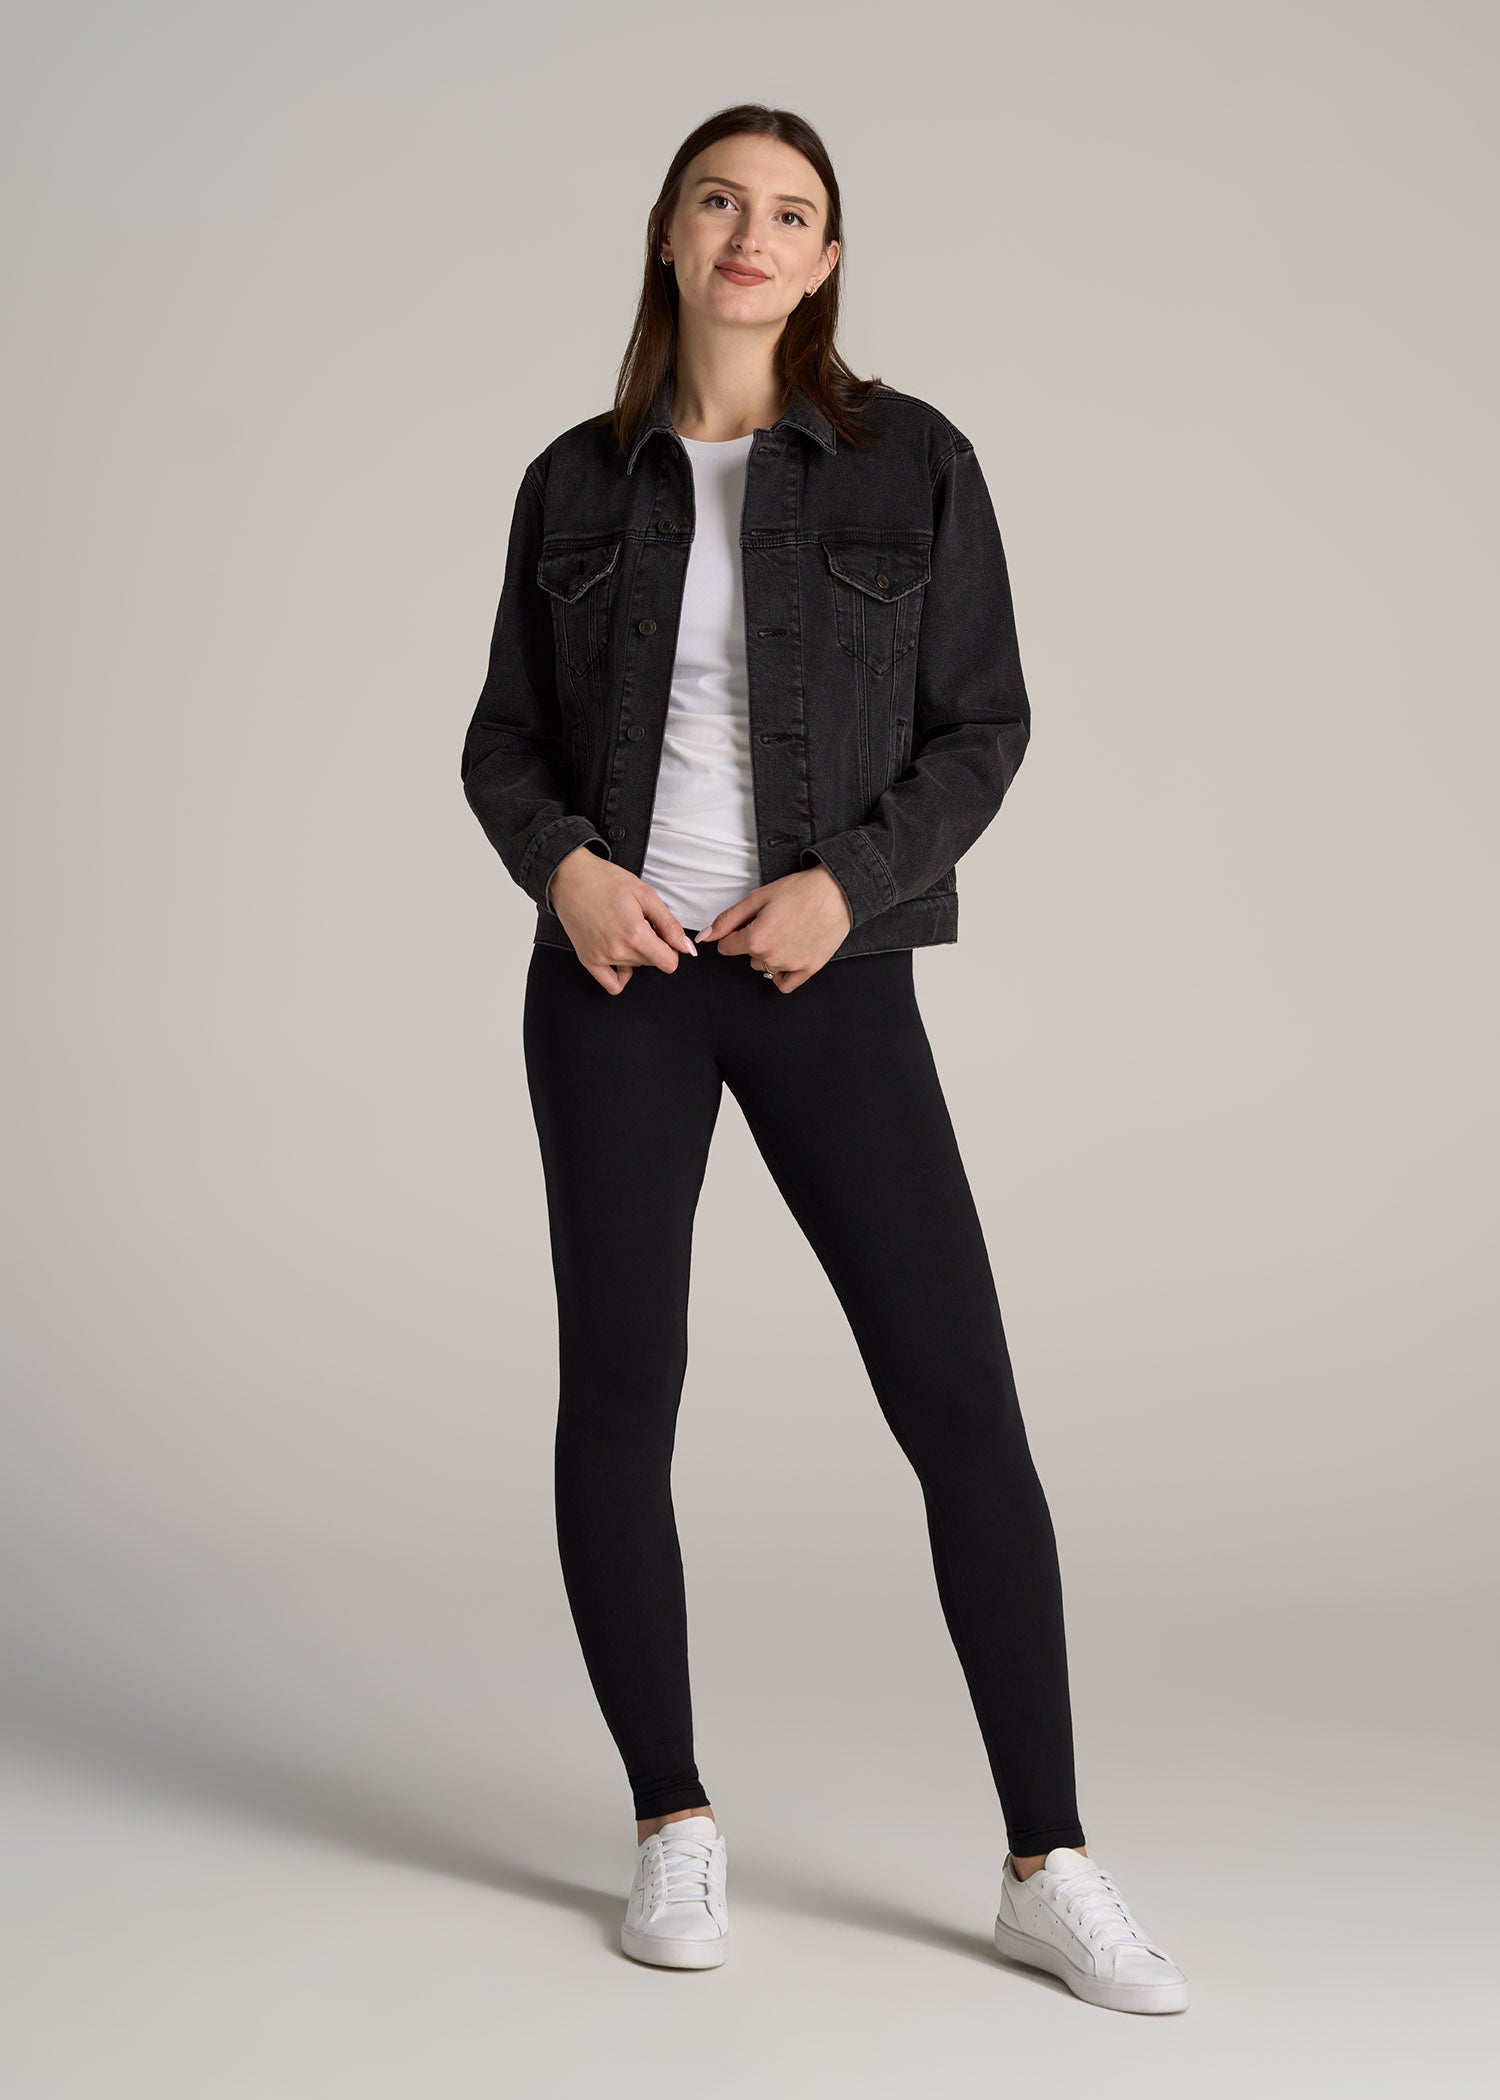 Grey Women's Cotton Ankle Length Leggings Size :- XL, XXL